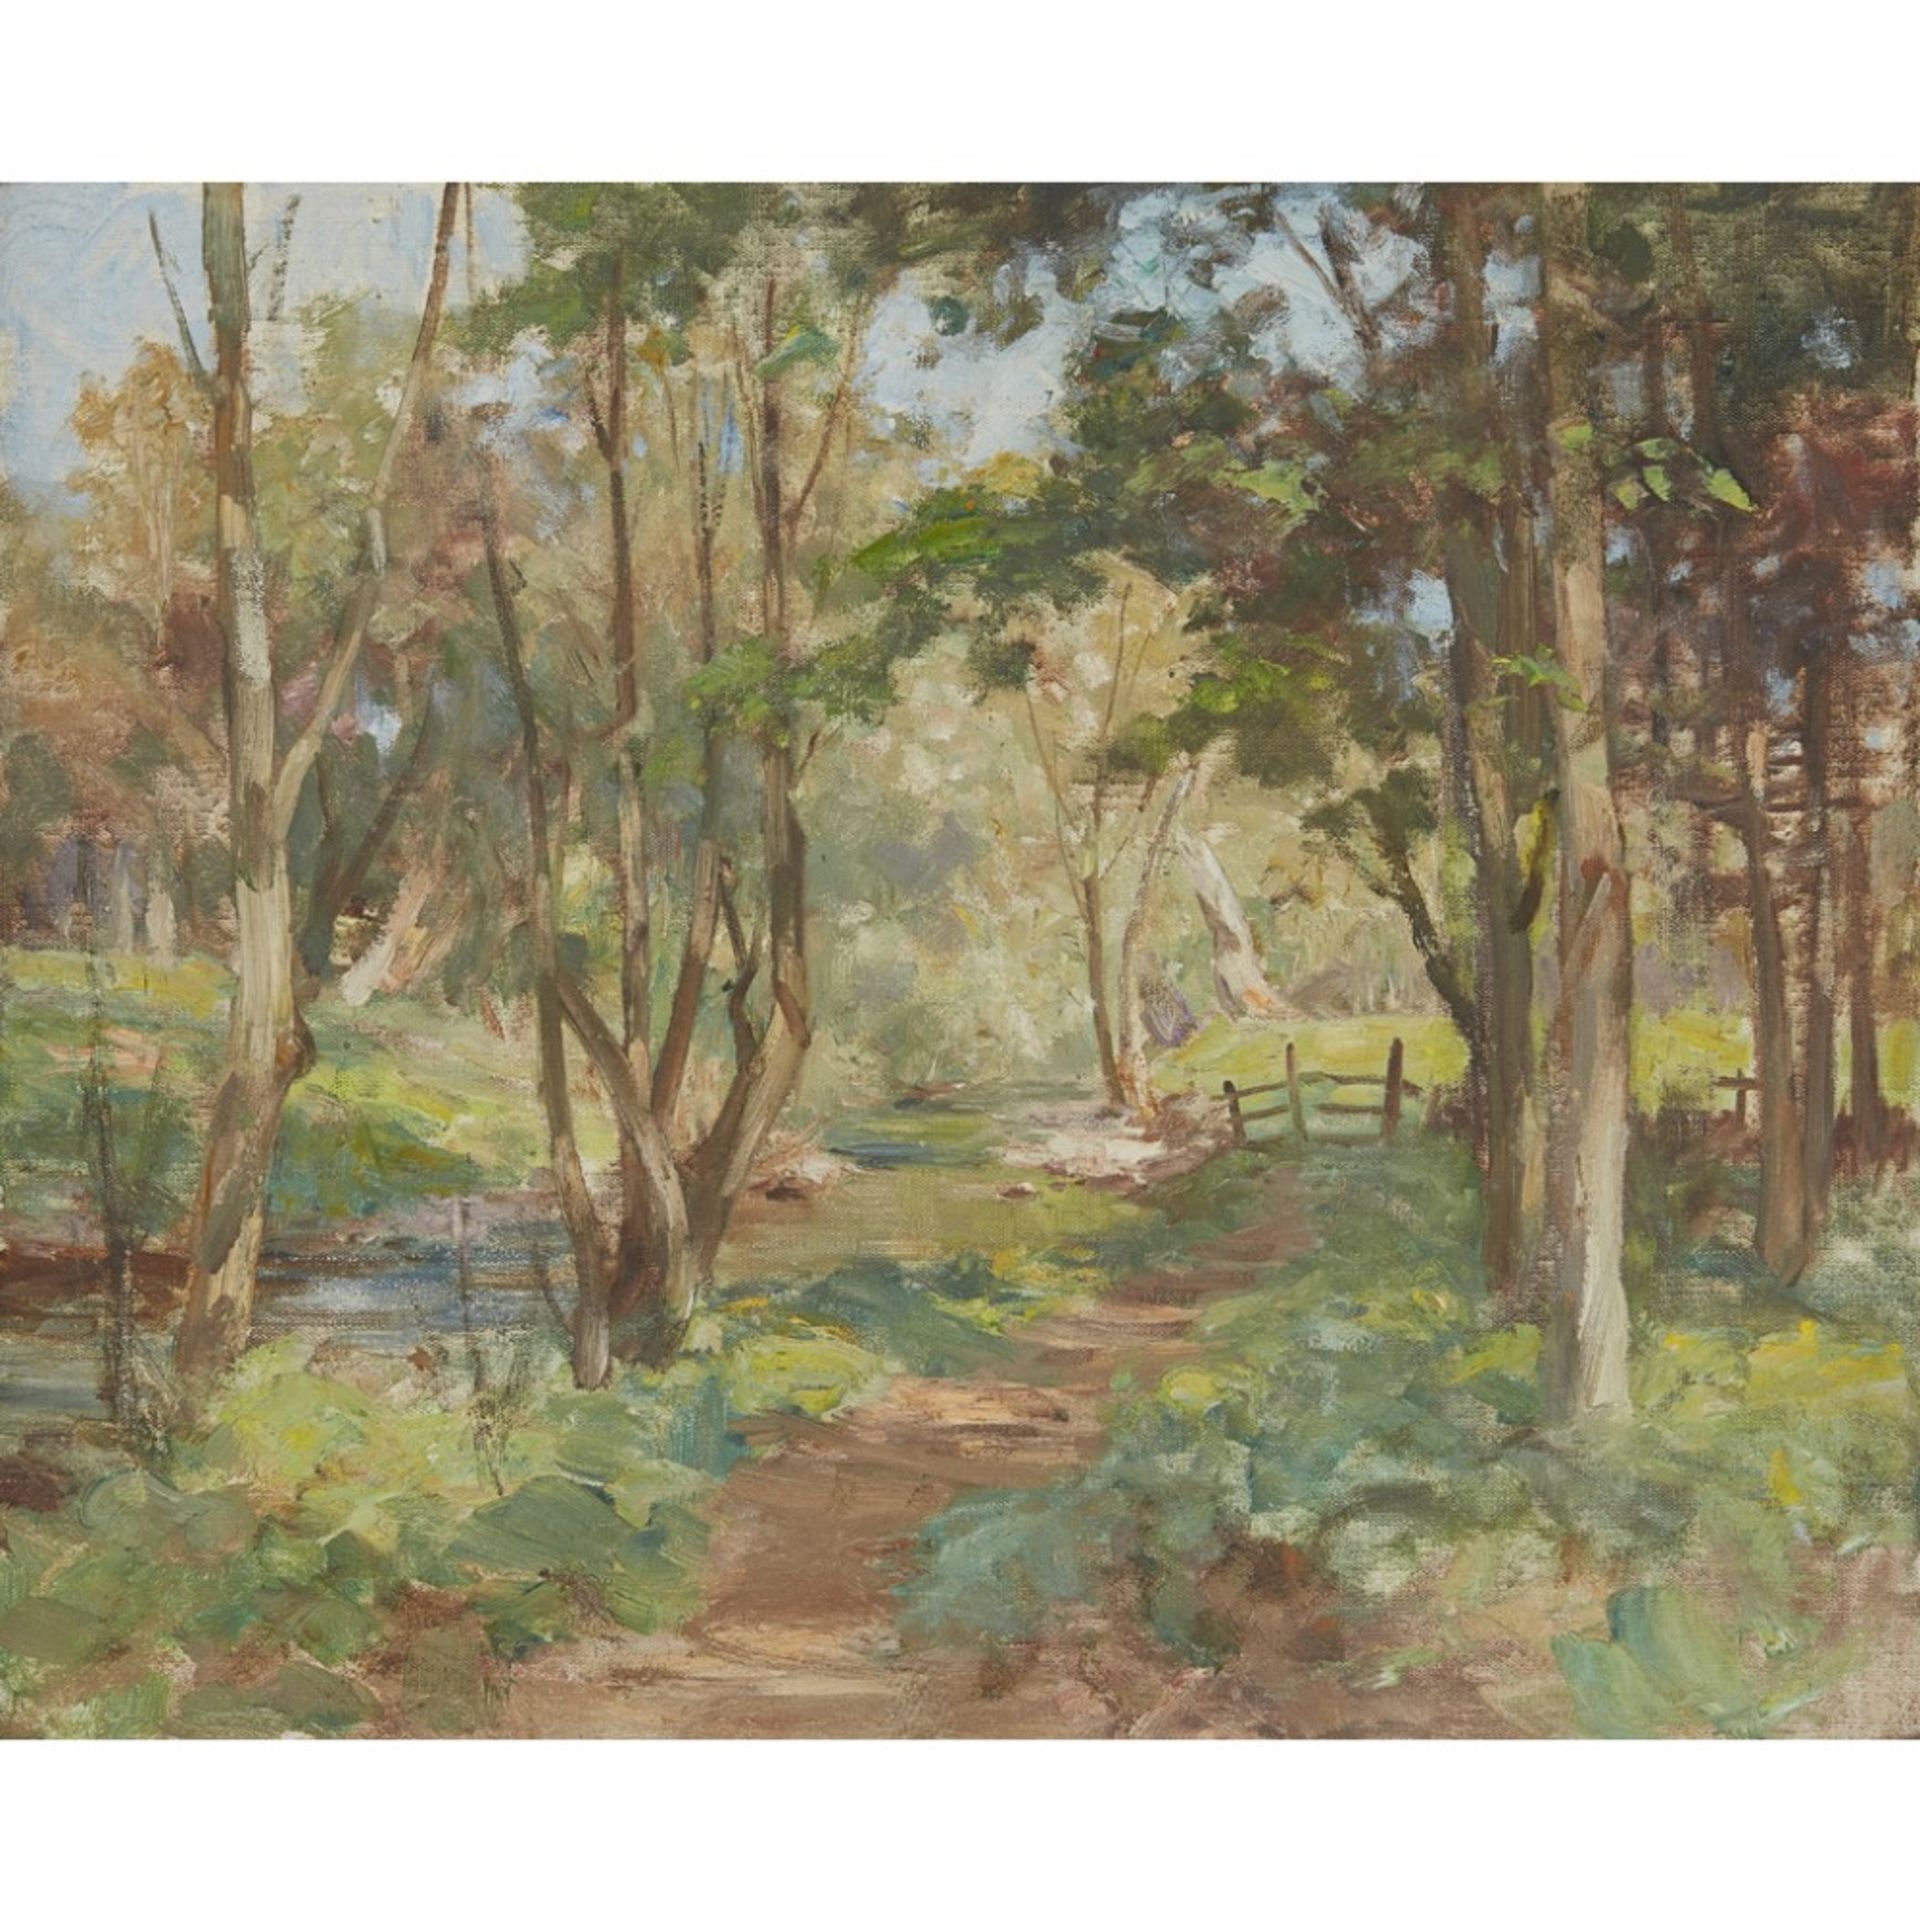 WILLIAM STEWART MACGEORGE R.S.A. (SCOTTISH 1861-1931)SYLVAN GLADE Oil on canvas50cm x 60cm (19.